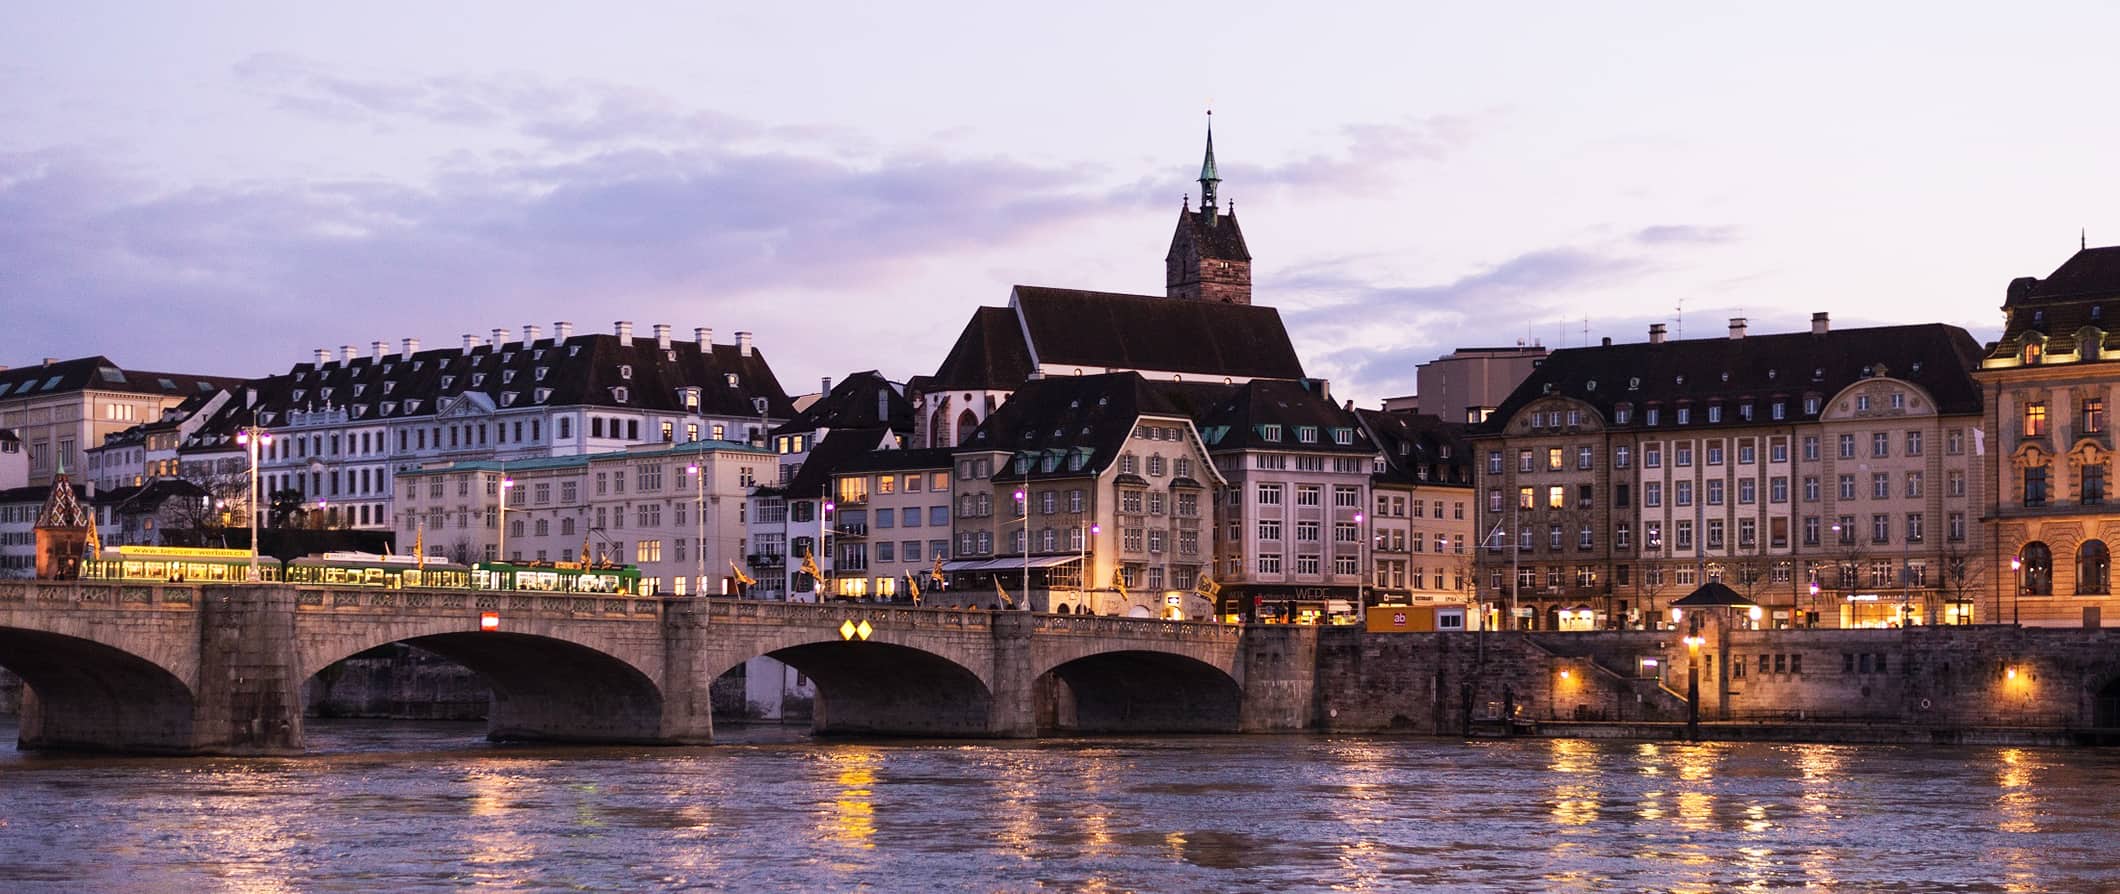 Ponte sobre o rio Reno, em Basileia, com edifícios históricos tradicionais ao fundo